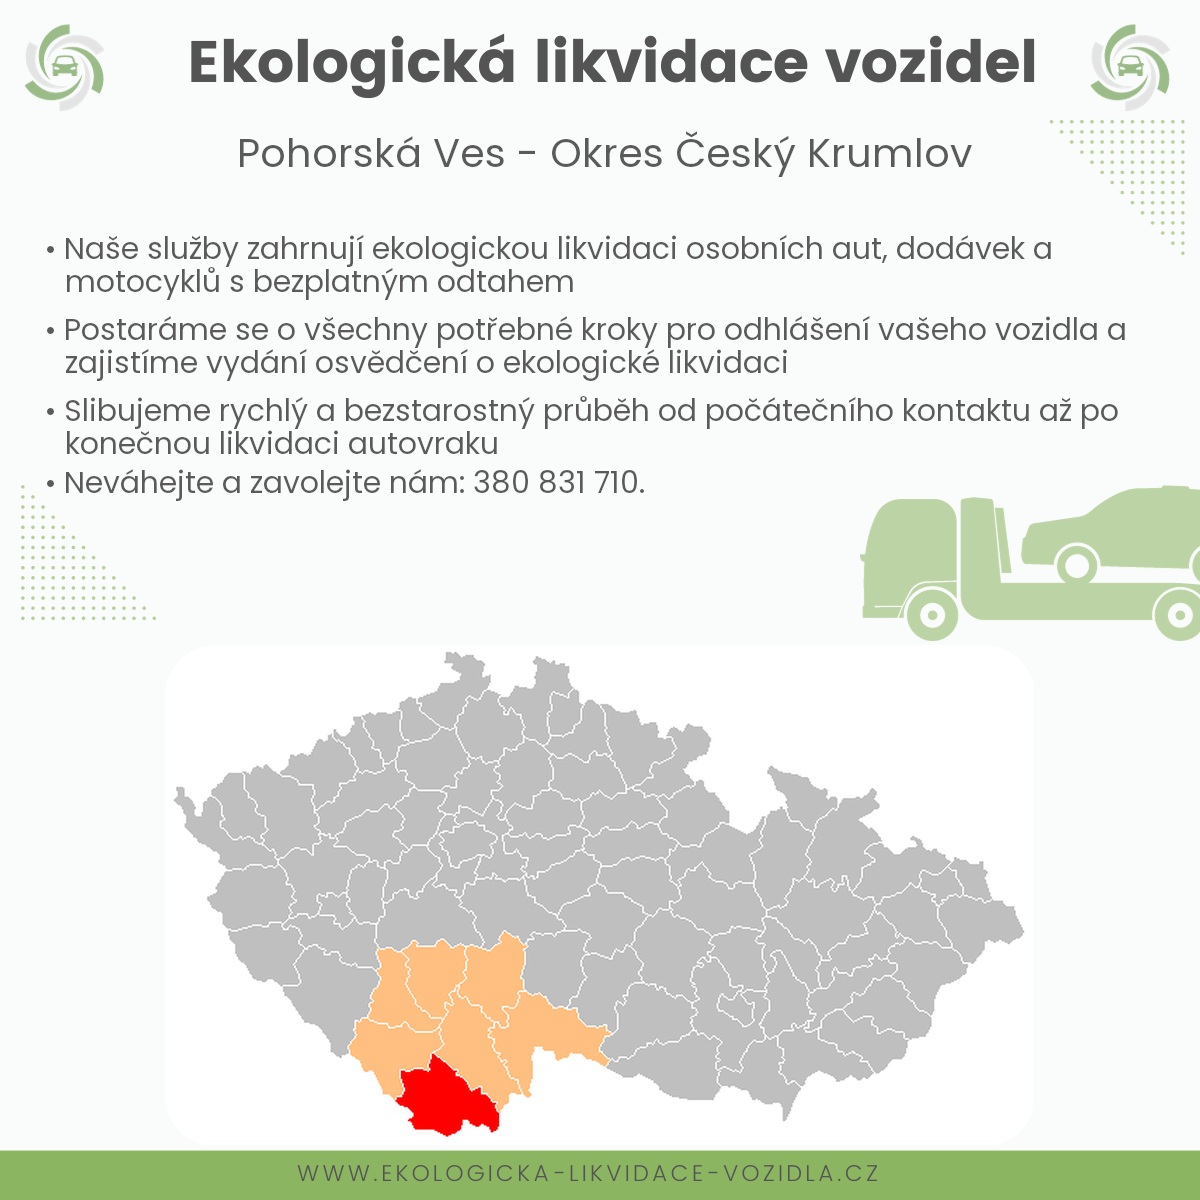 likvidace vozidel - Pohorská Ves